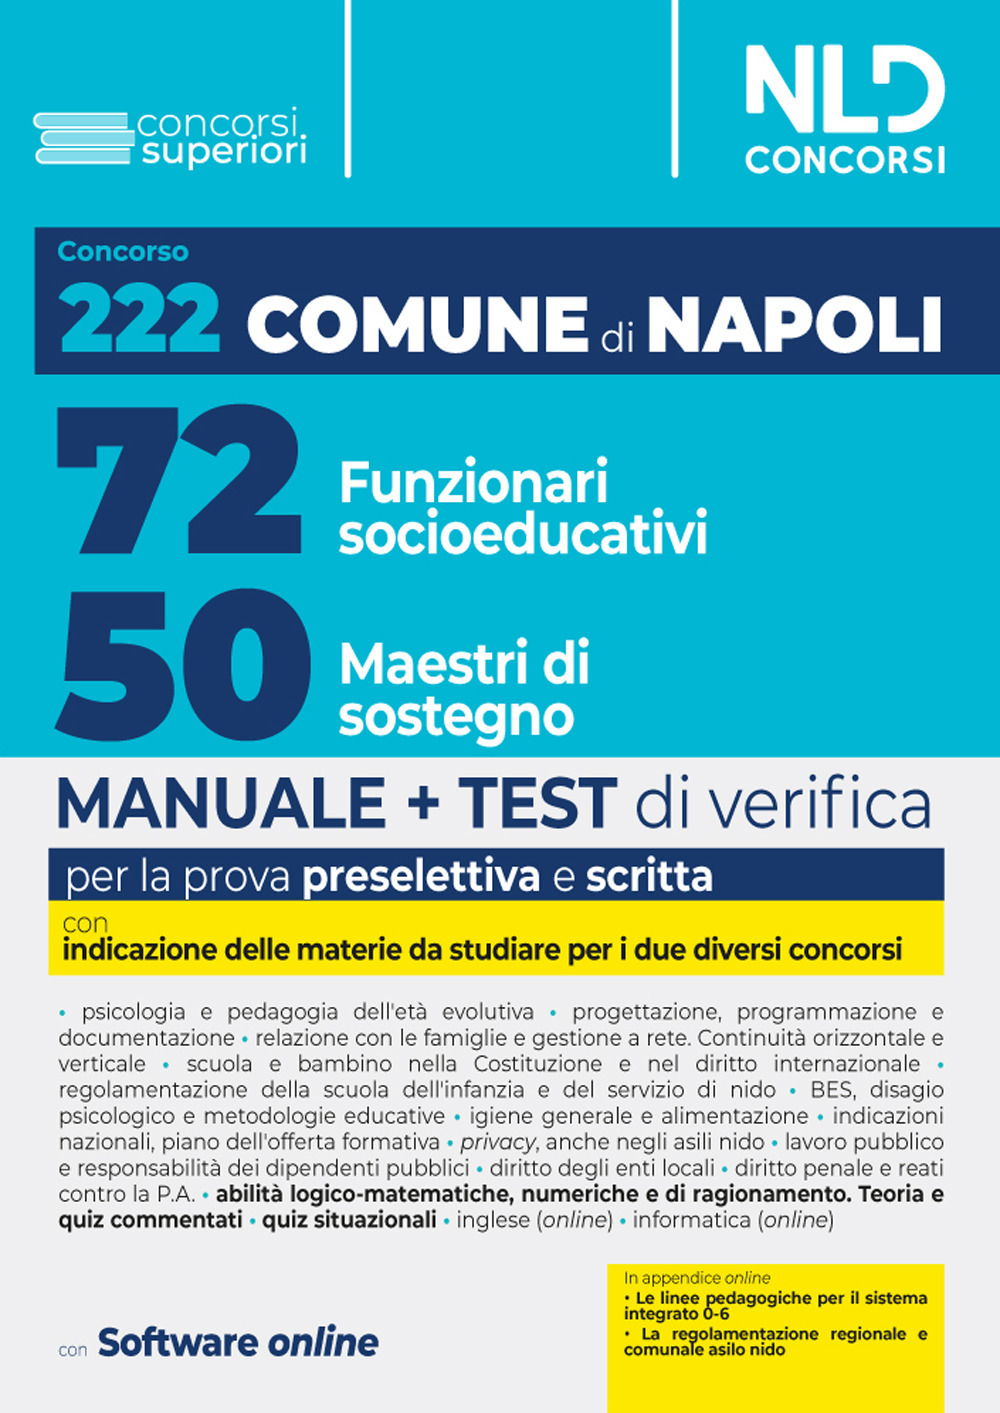 Concorso 222 posti Comune di Napoli: Manuale unico per 72 Funzionari socio educativi (EDU/D) + 50 Maestri di sostegno (MAS/D). Con software di simulazione